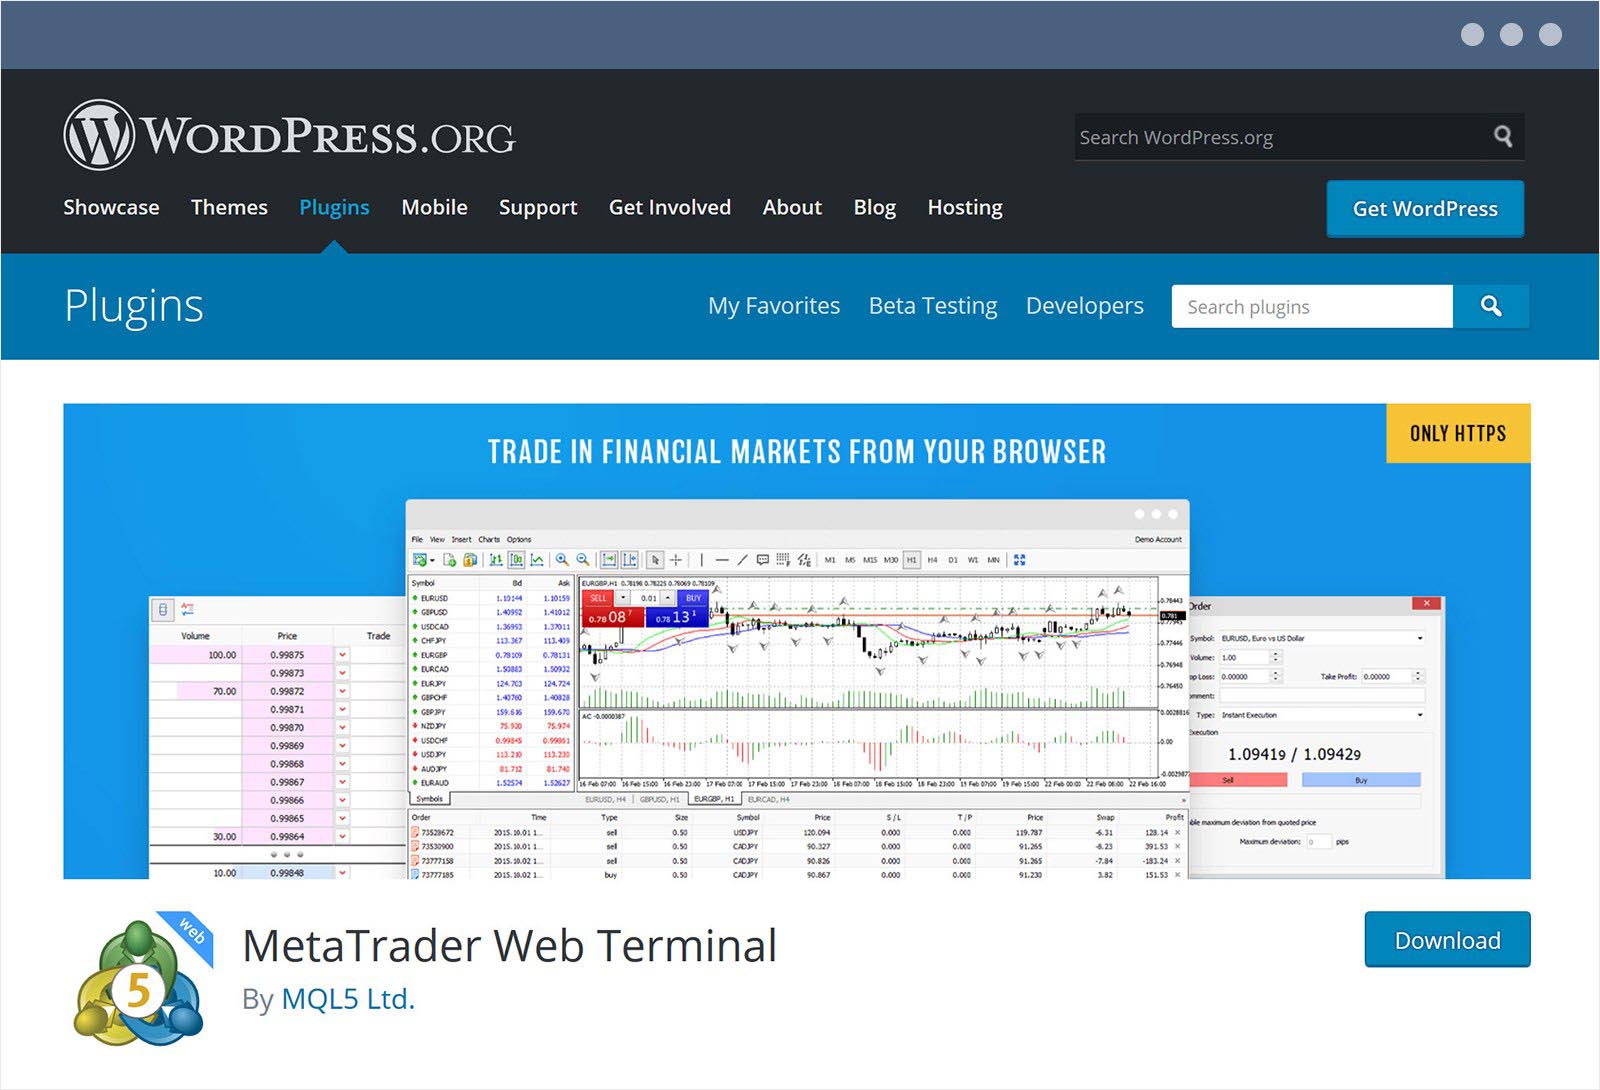 Das MetaTrader Webterminal Plugin für WordPress